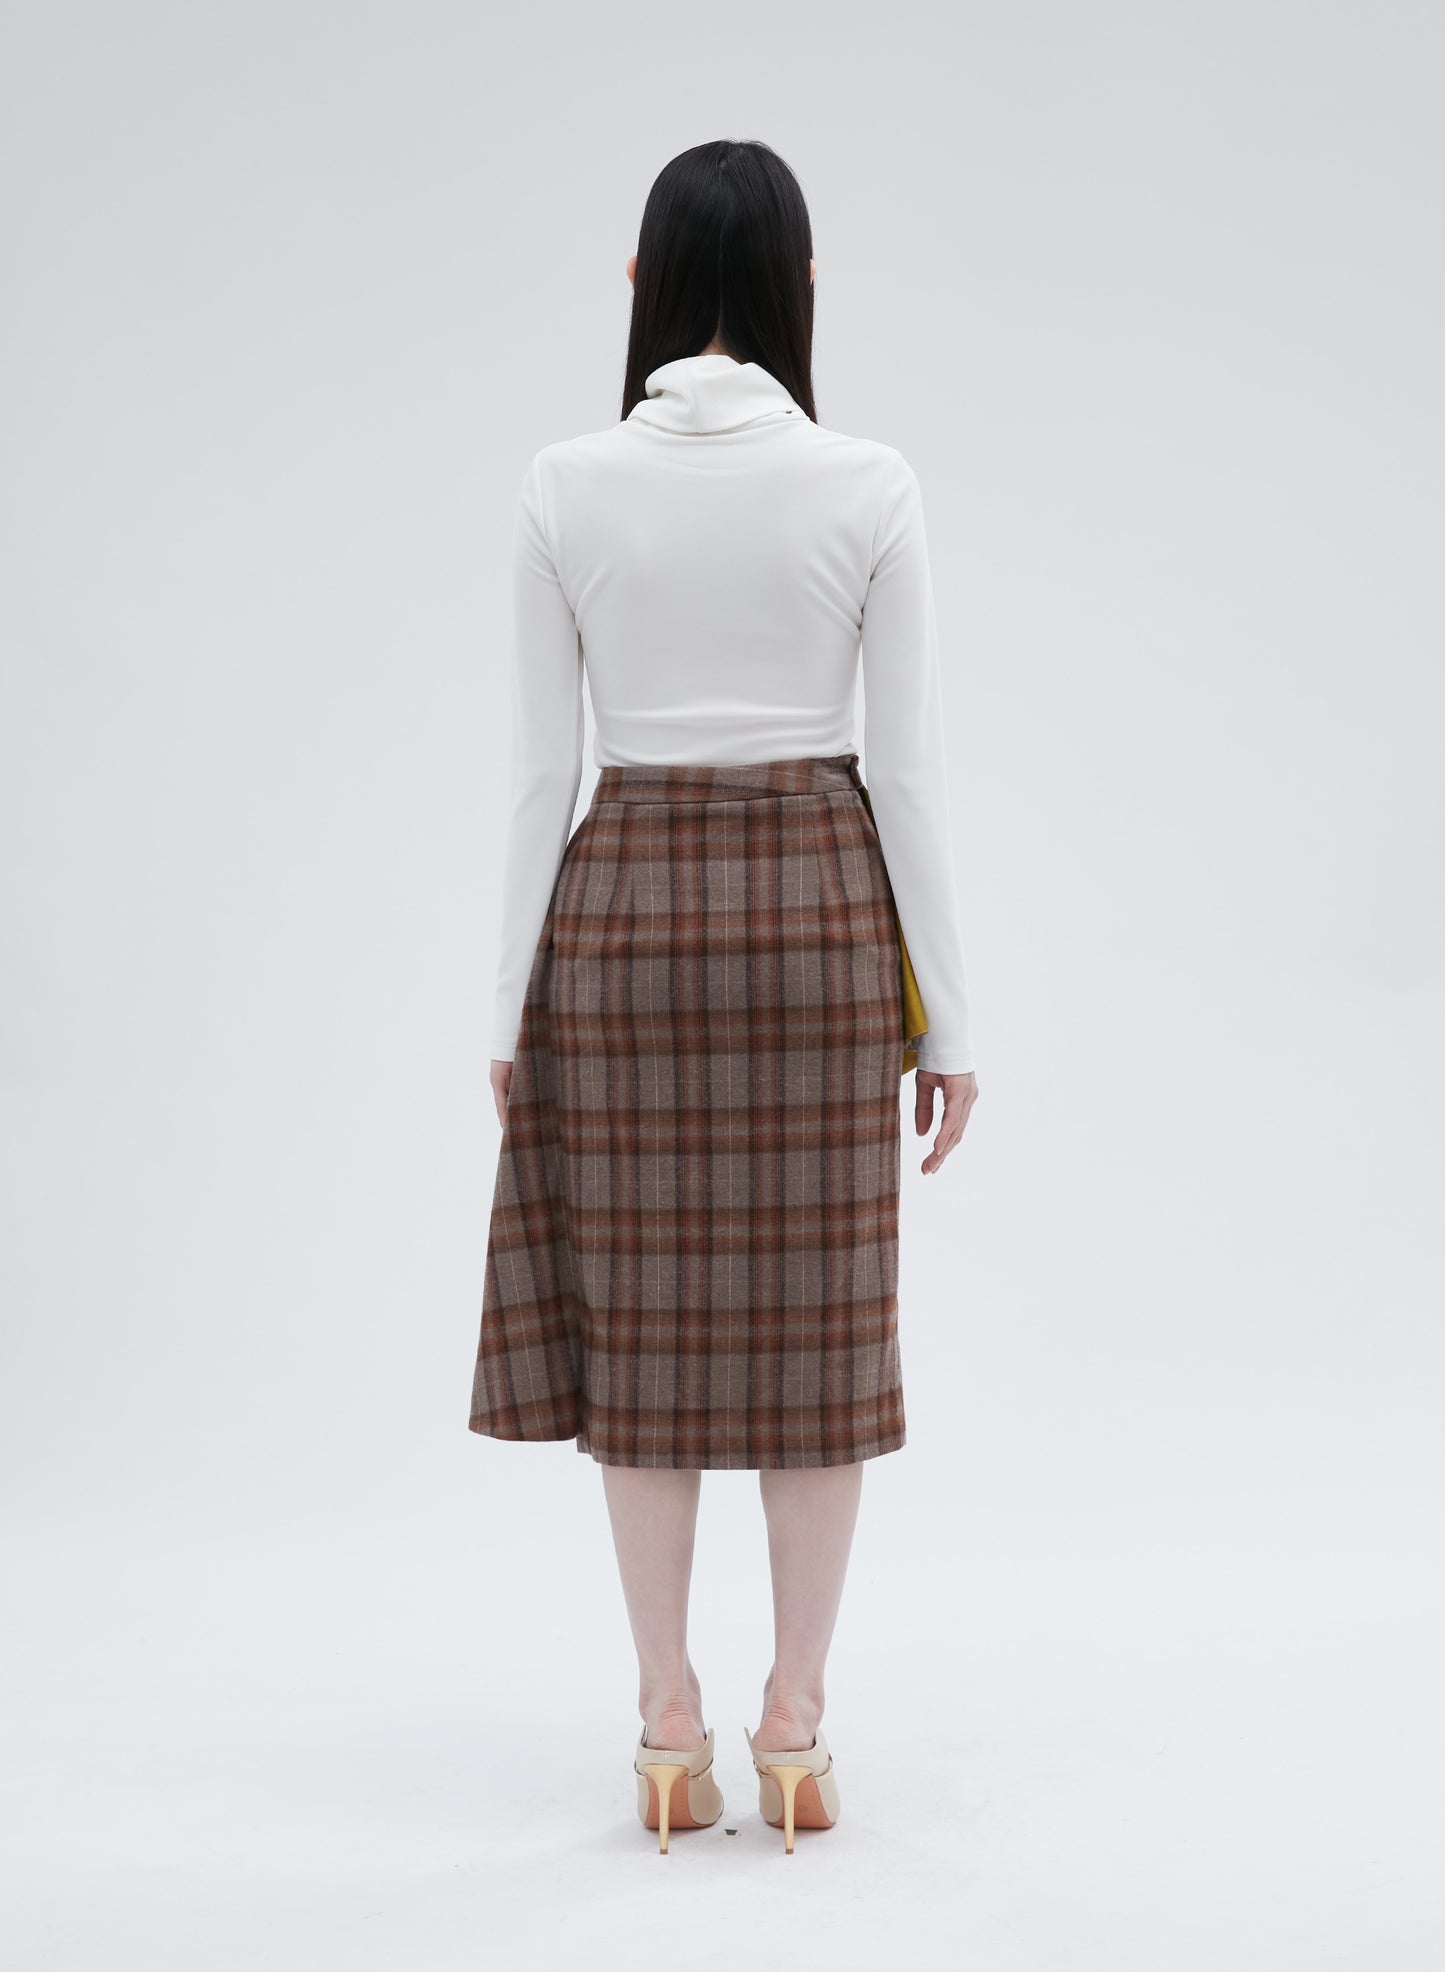 Ripple skirt